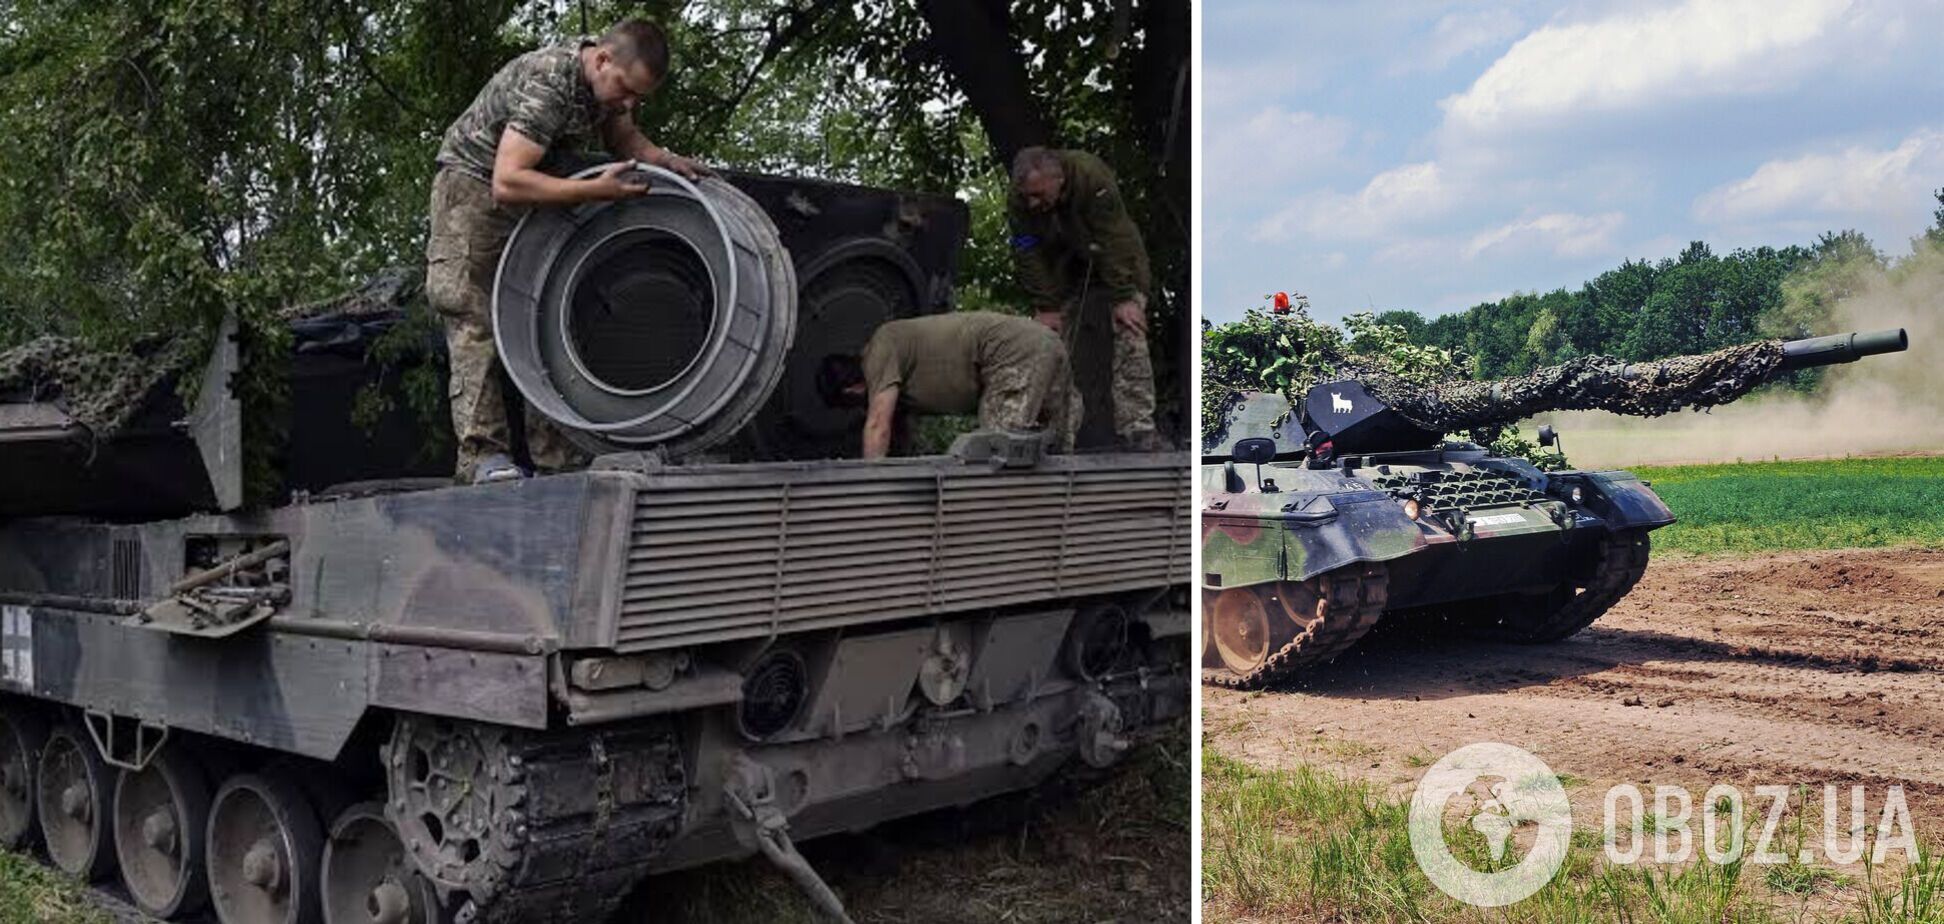 Меньше, чем писали россияне: западные СМИ посчитали, сколько танков Leopard 2 потеряла Украина за время контрнаступления